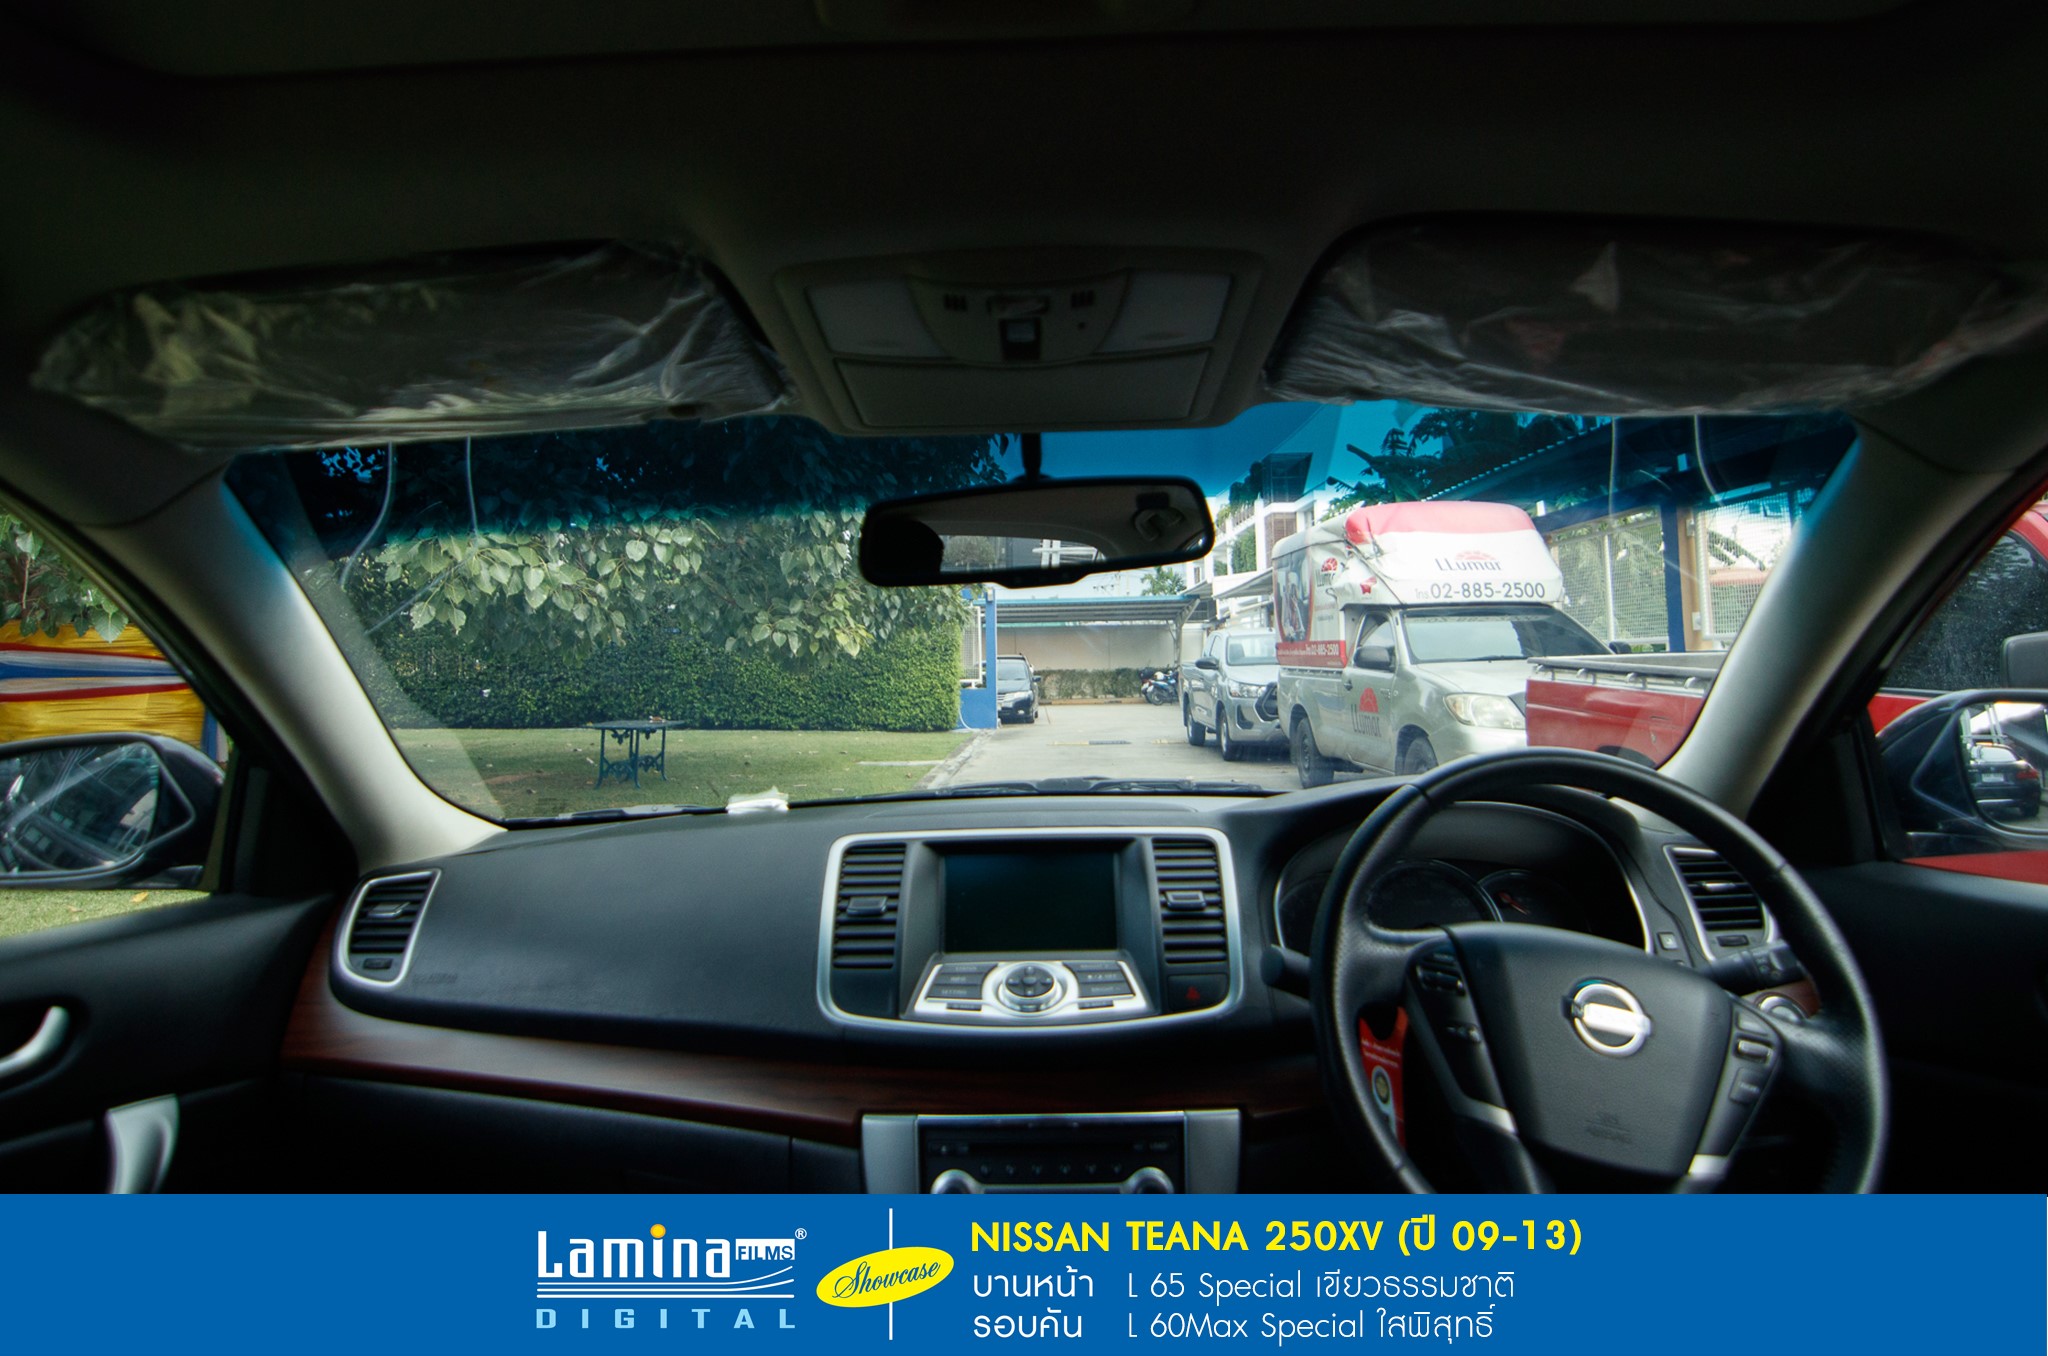 ฟิล์มใสกันร้อน lamina special series Nissan Teana 250xv 5